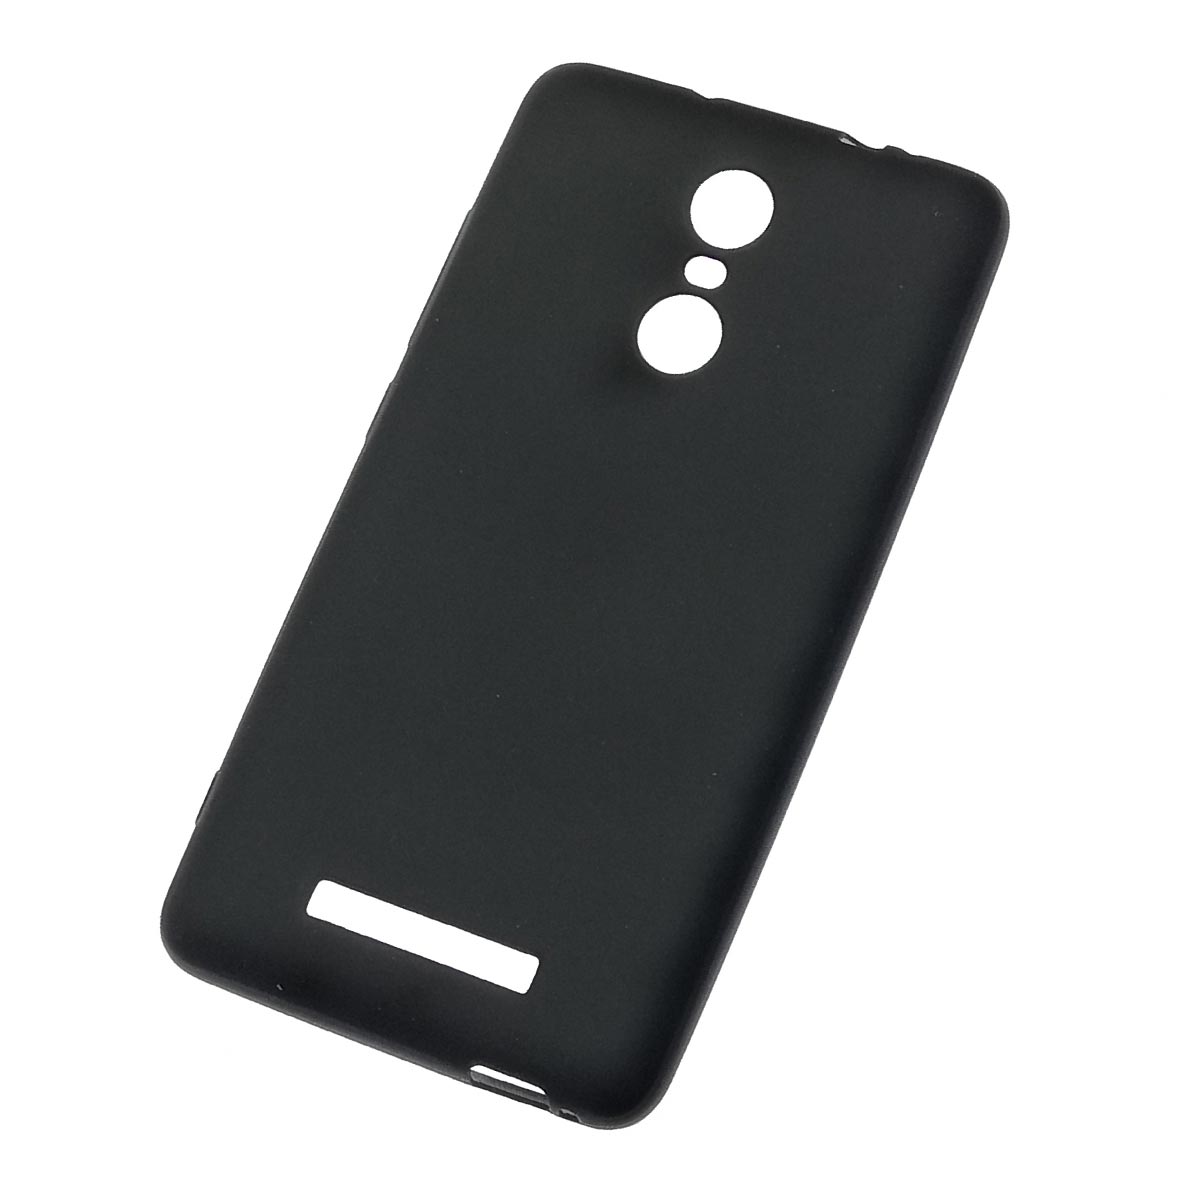 Чехол накладка для XIAOMI Redmi Note 3, Note 3 Pro, силикон, цвет черный.